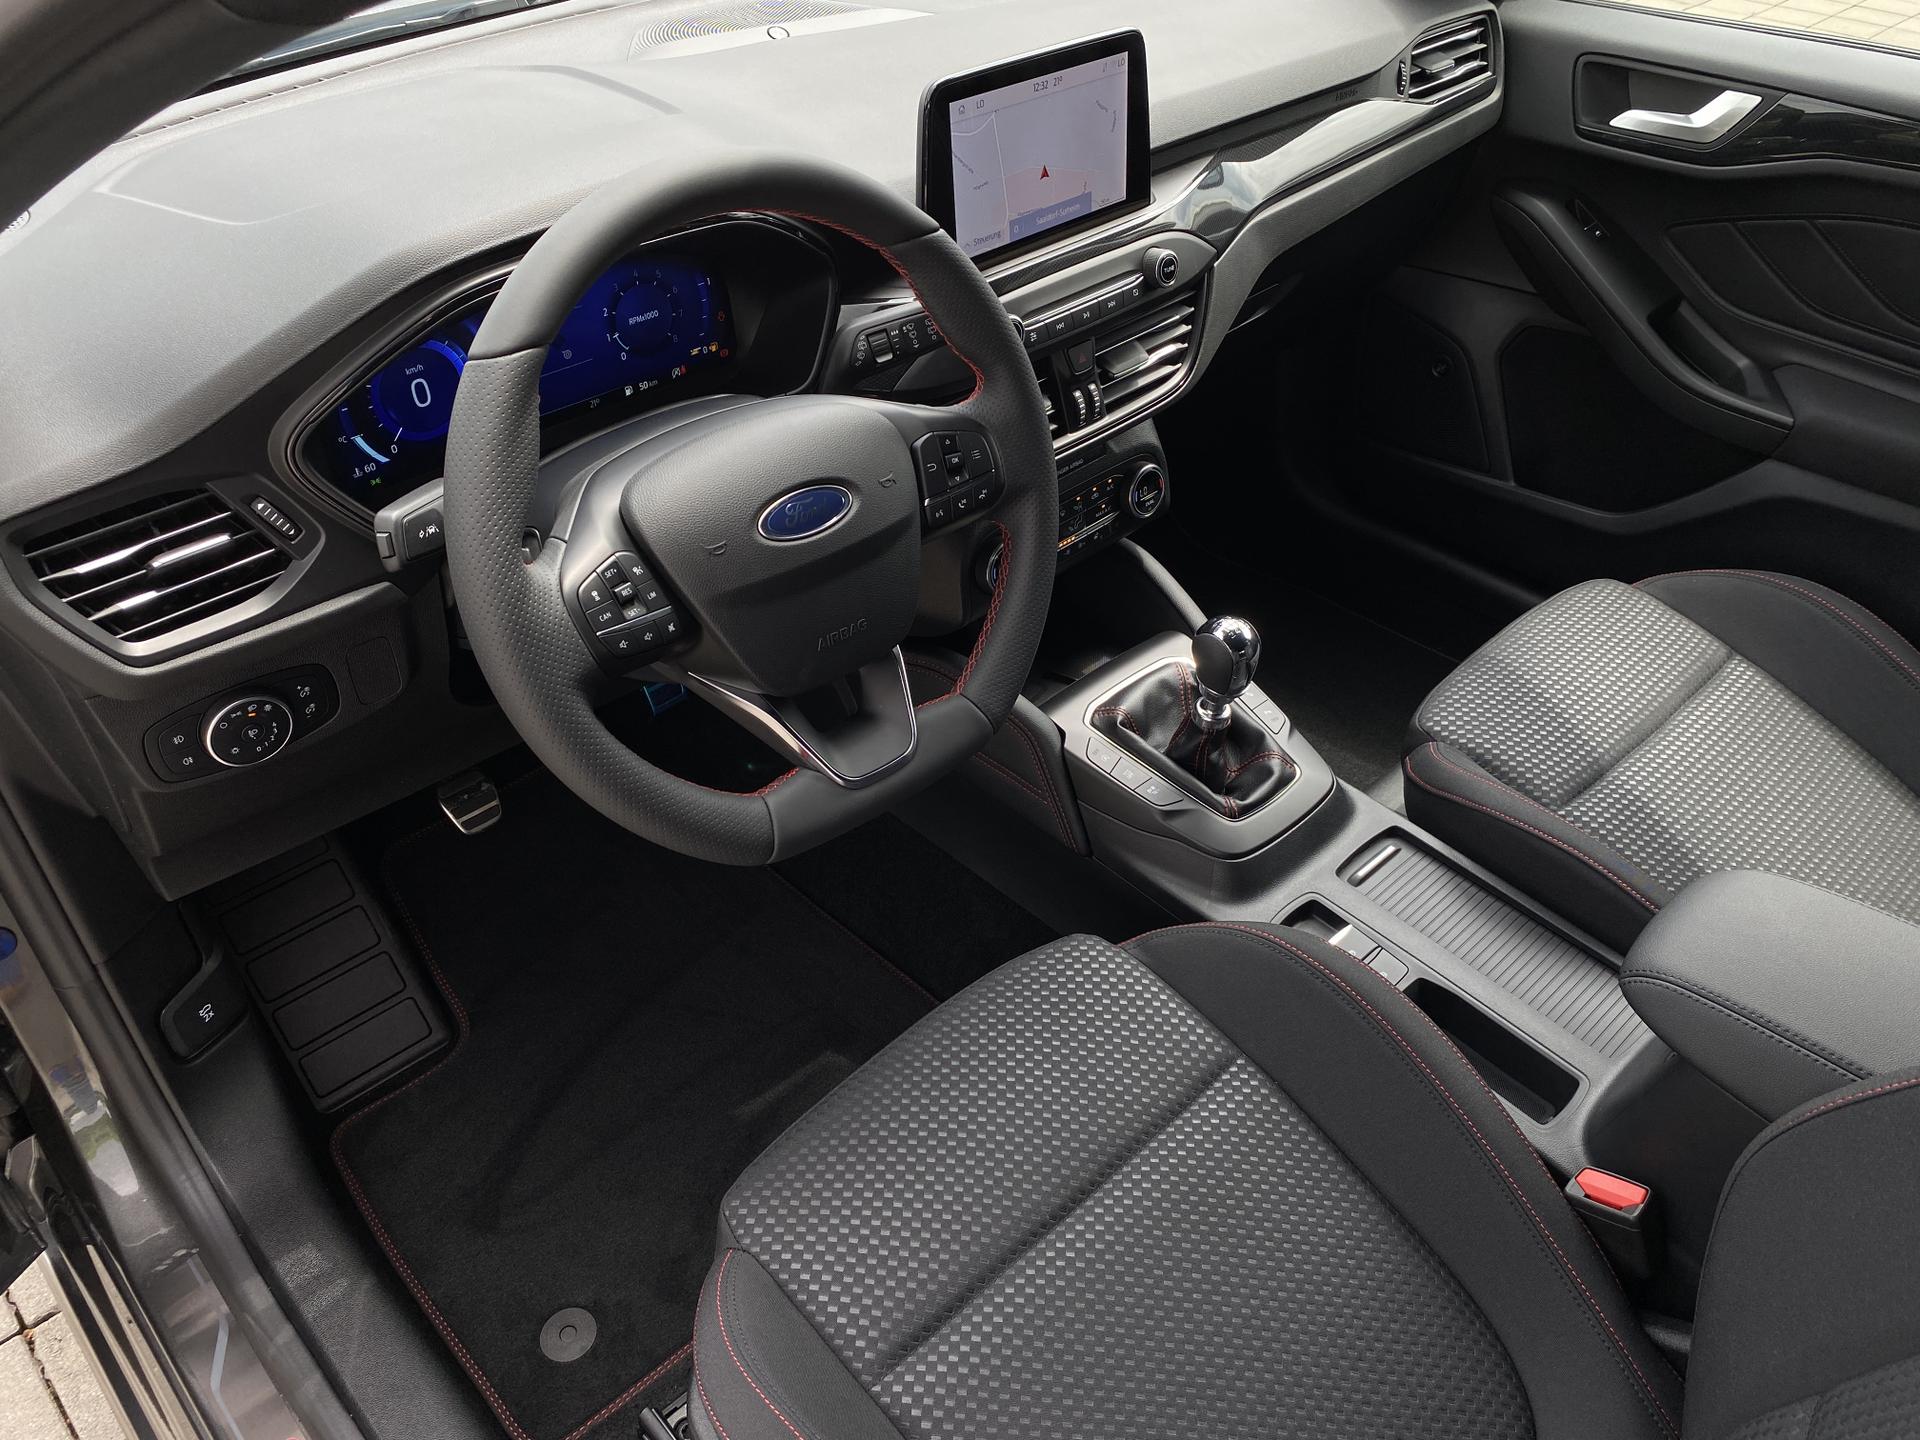 Ford Focus Innenraum